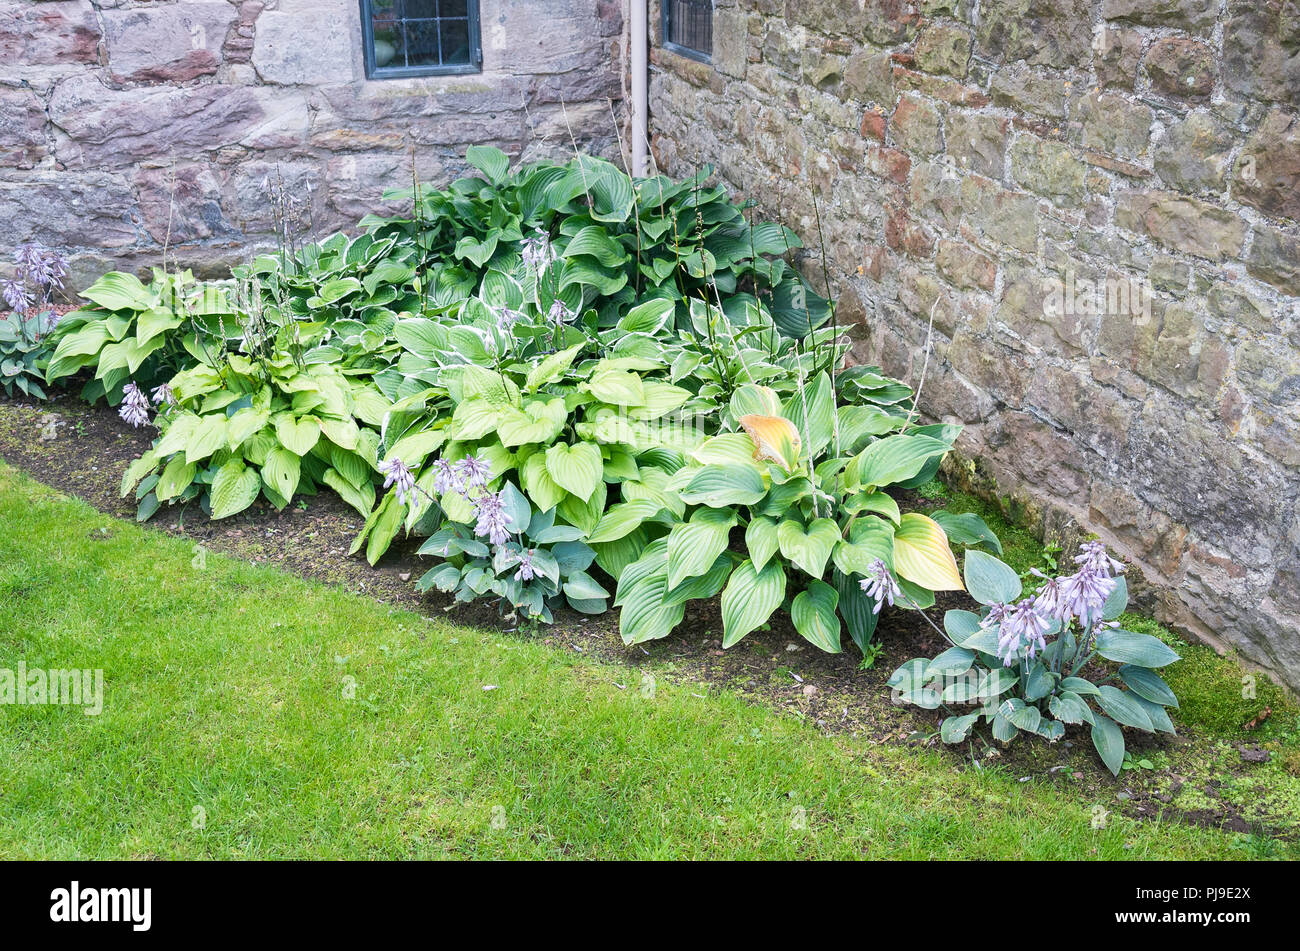 Una cama triangular de Hosta plantas tomando ventaja de torpes pedazo de tierra en Cumbria, Reino Unido Foto de stock